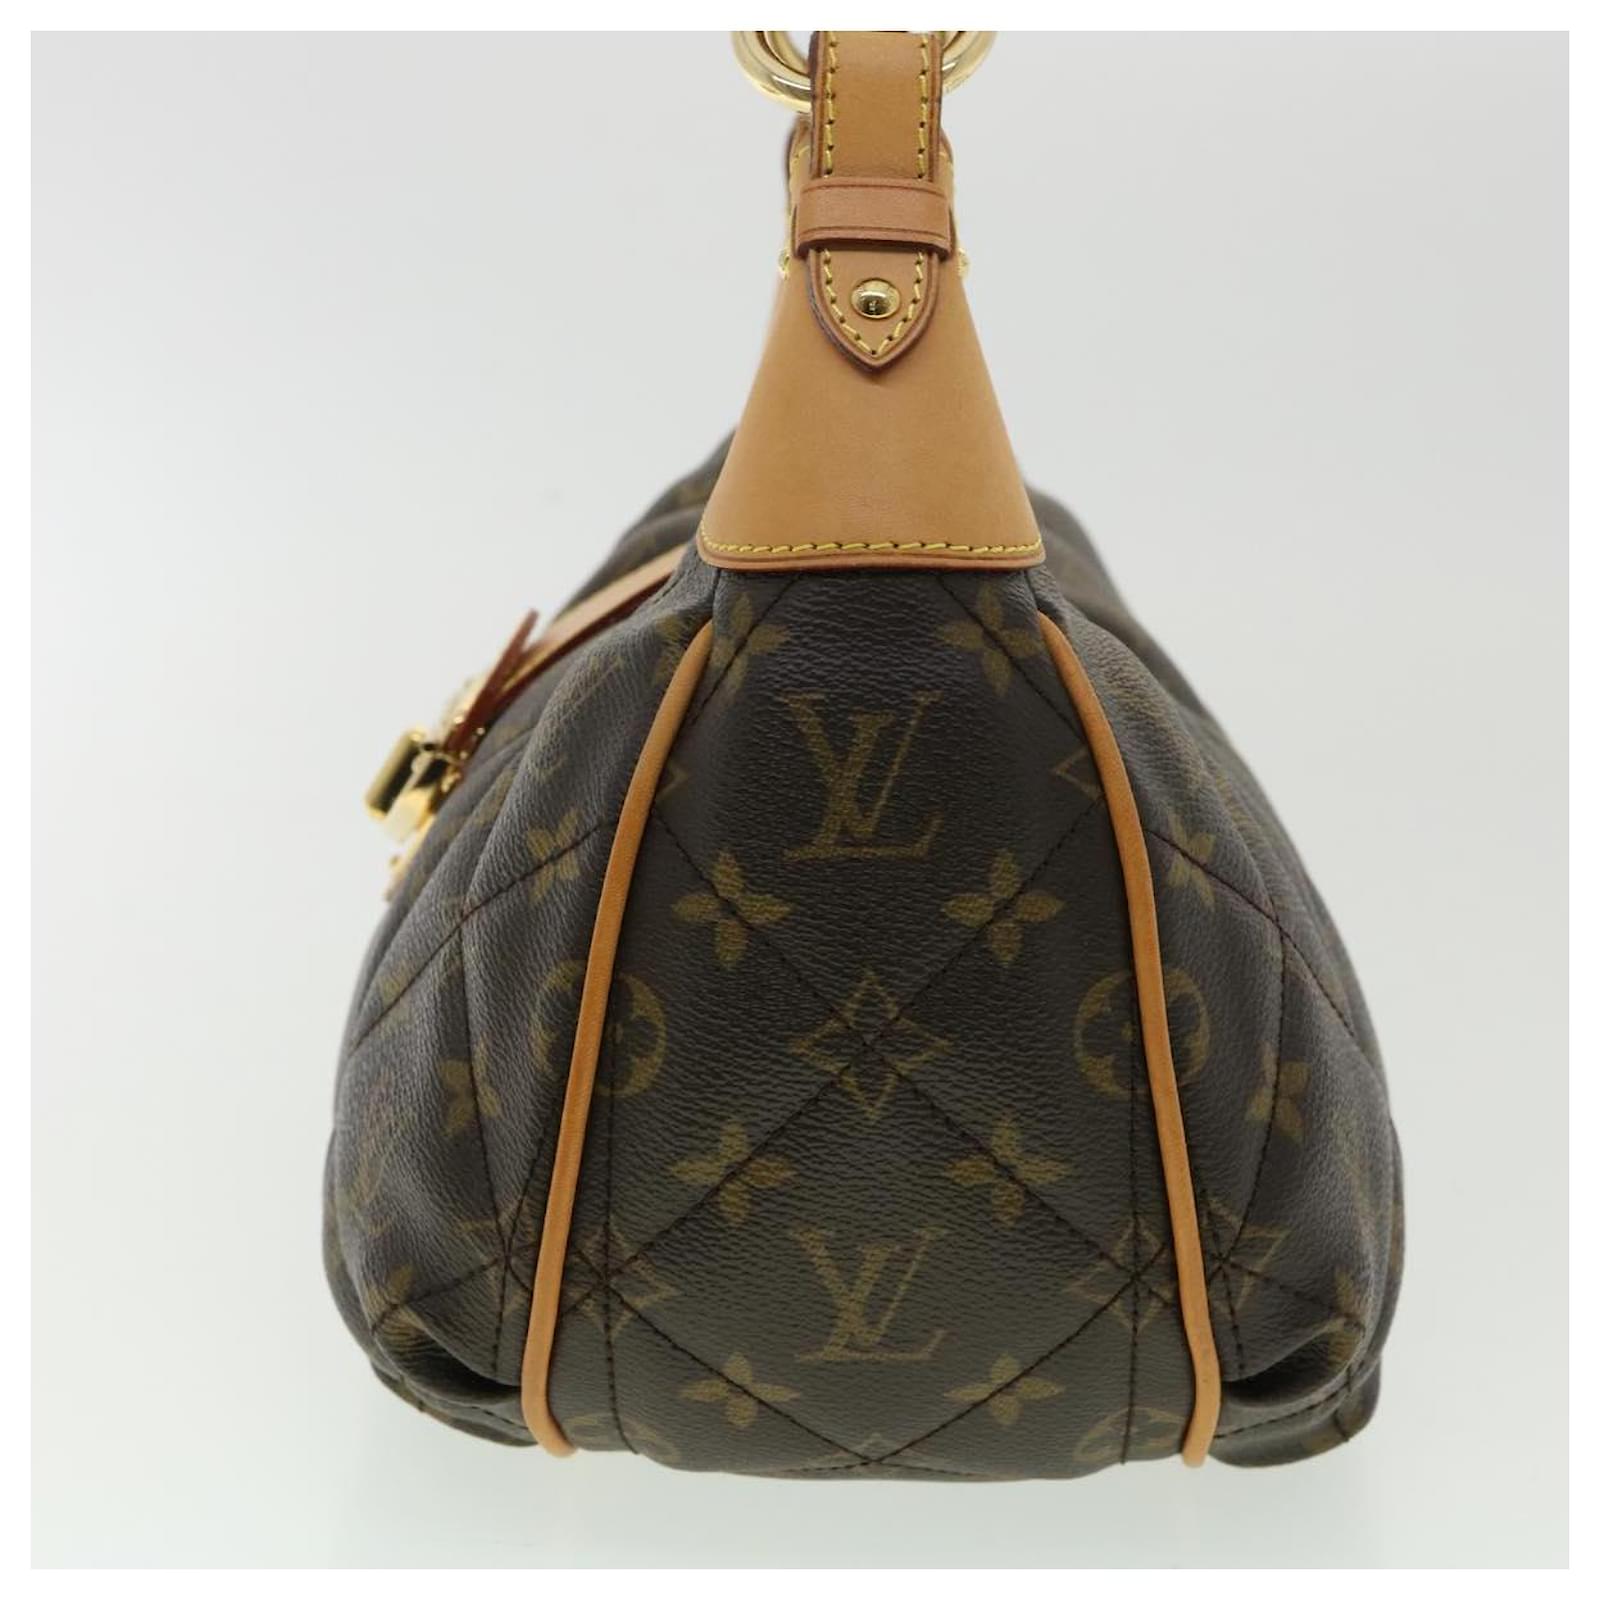 Buy LOUIS VUITTON City Bag PM Monogram Etoile M41435 Shoulder Bag